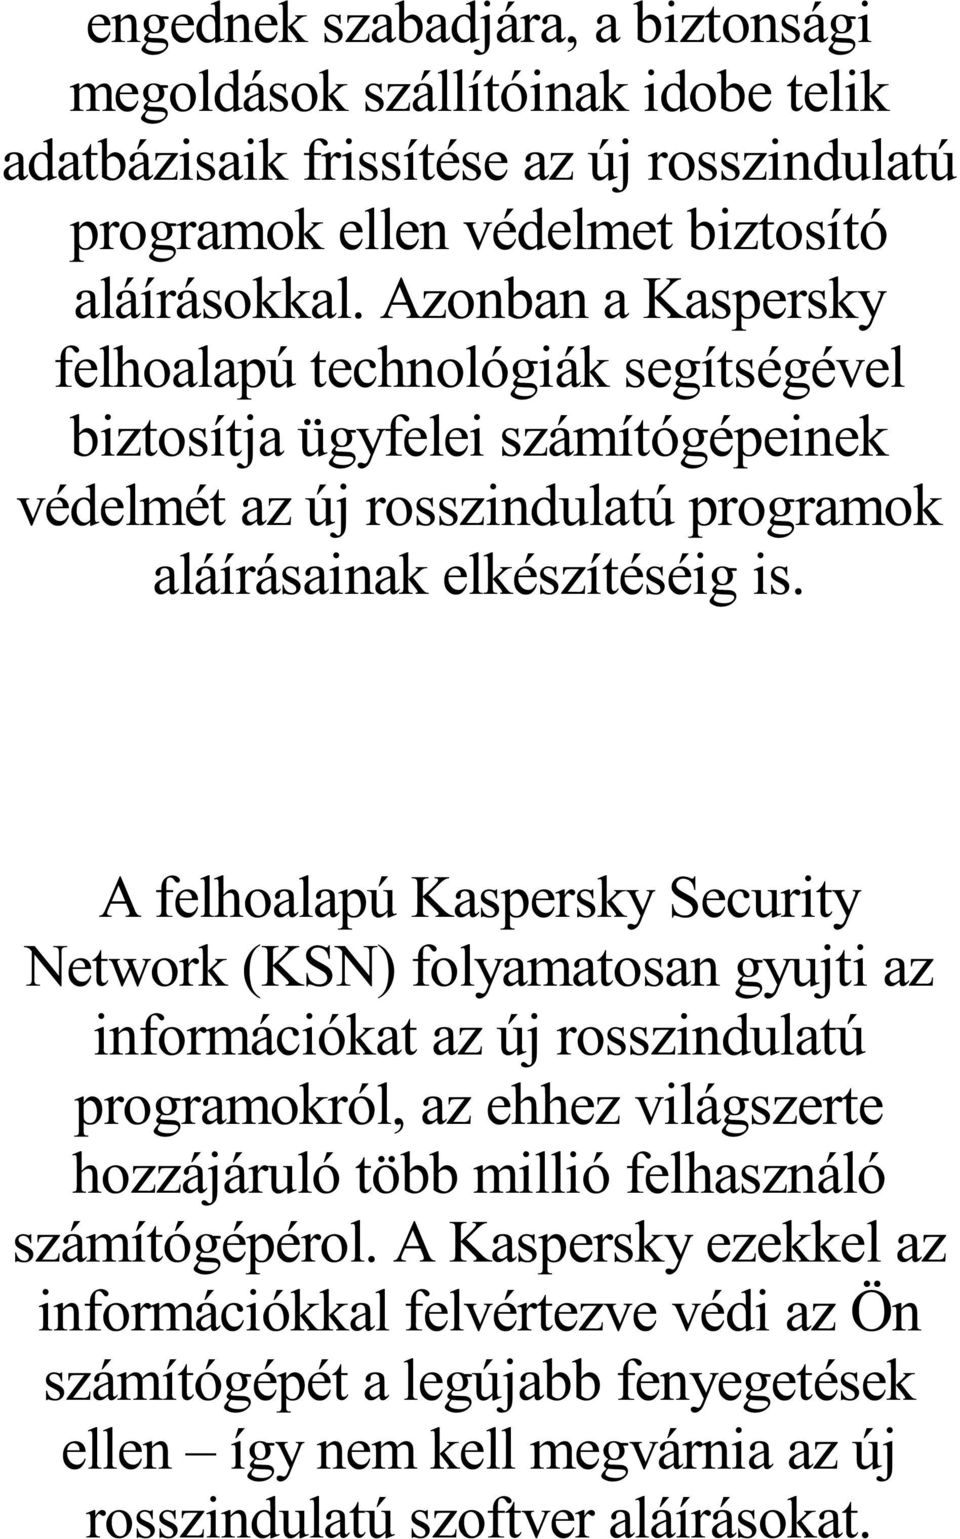 A felhoalapú Kaspersky Security Network (KSN) folyamatosan gyujti az információkat az új rosszindulatú programokról, az ehhez világszerte hozzájáruló több millió